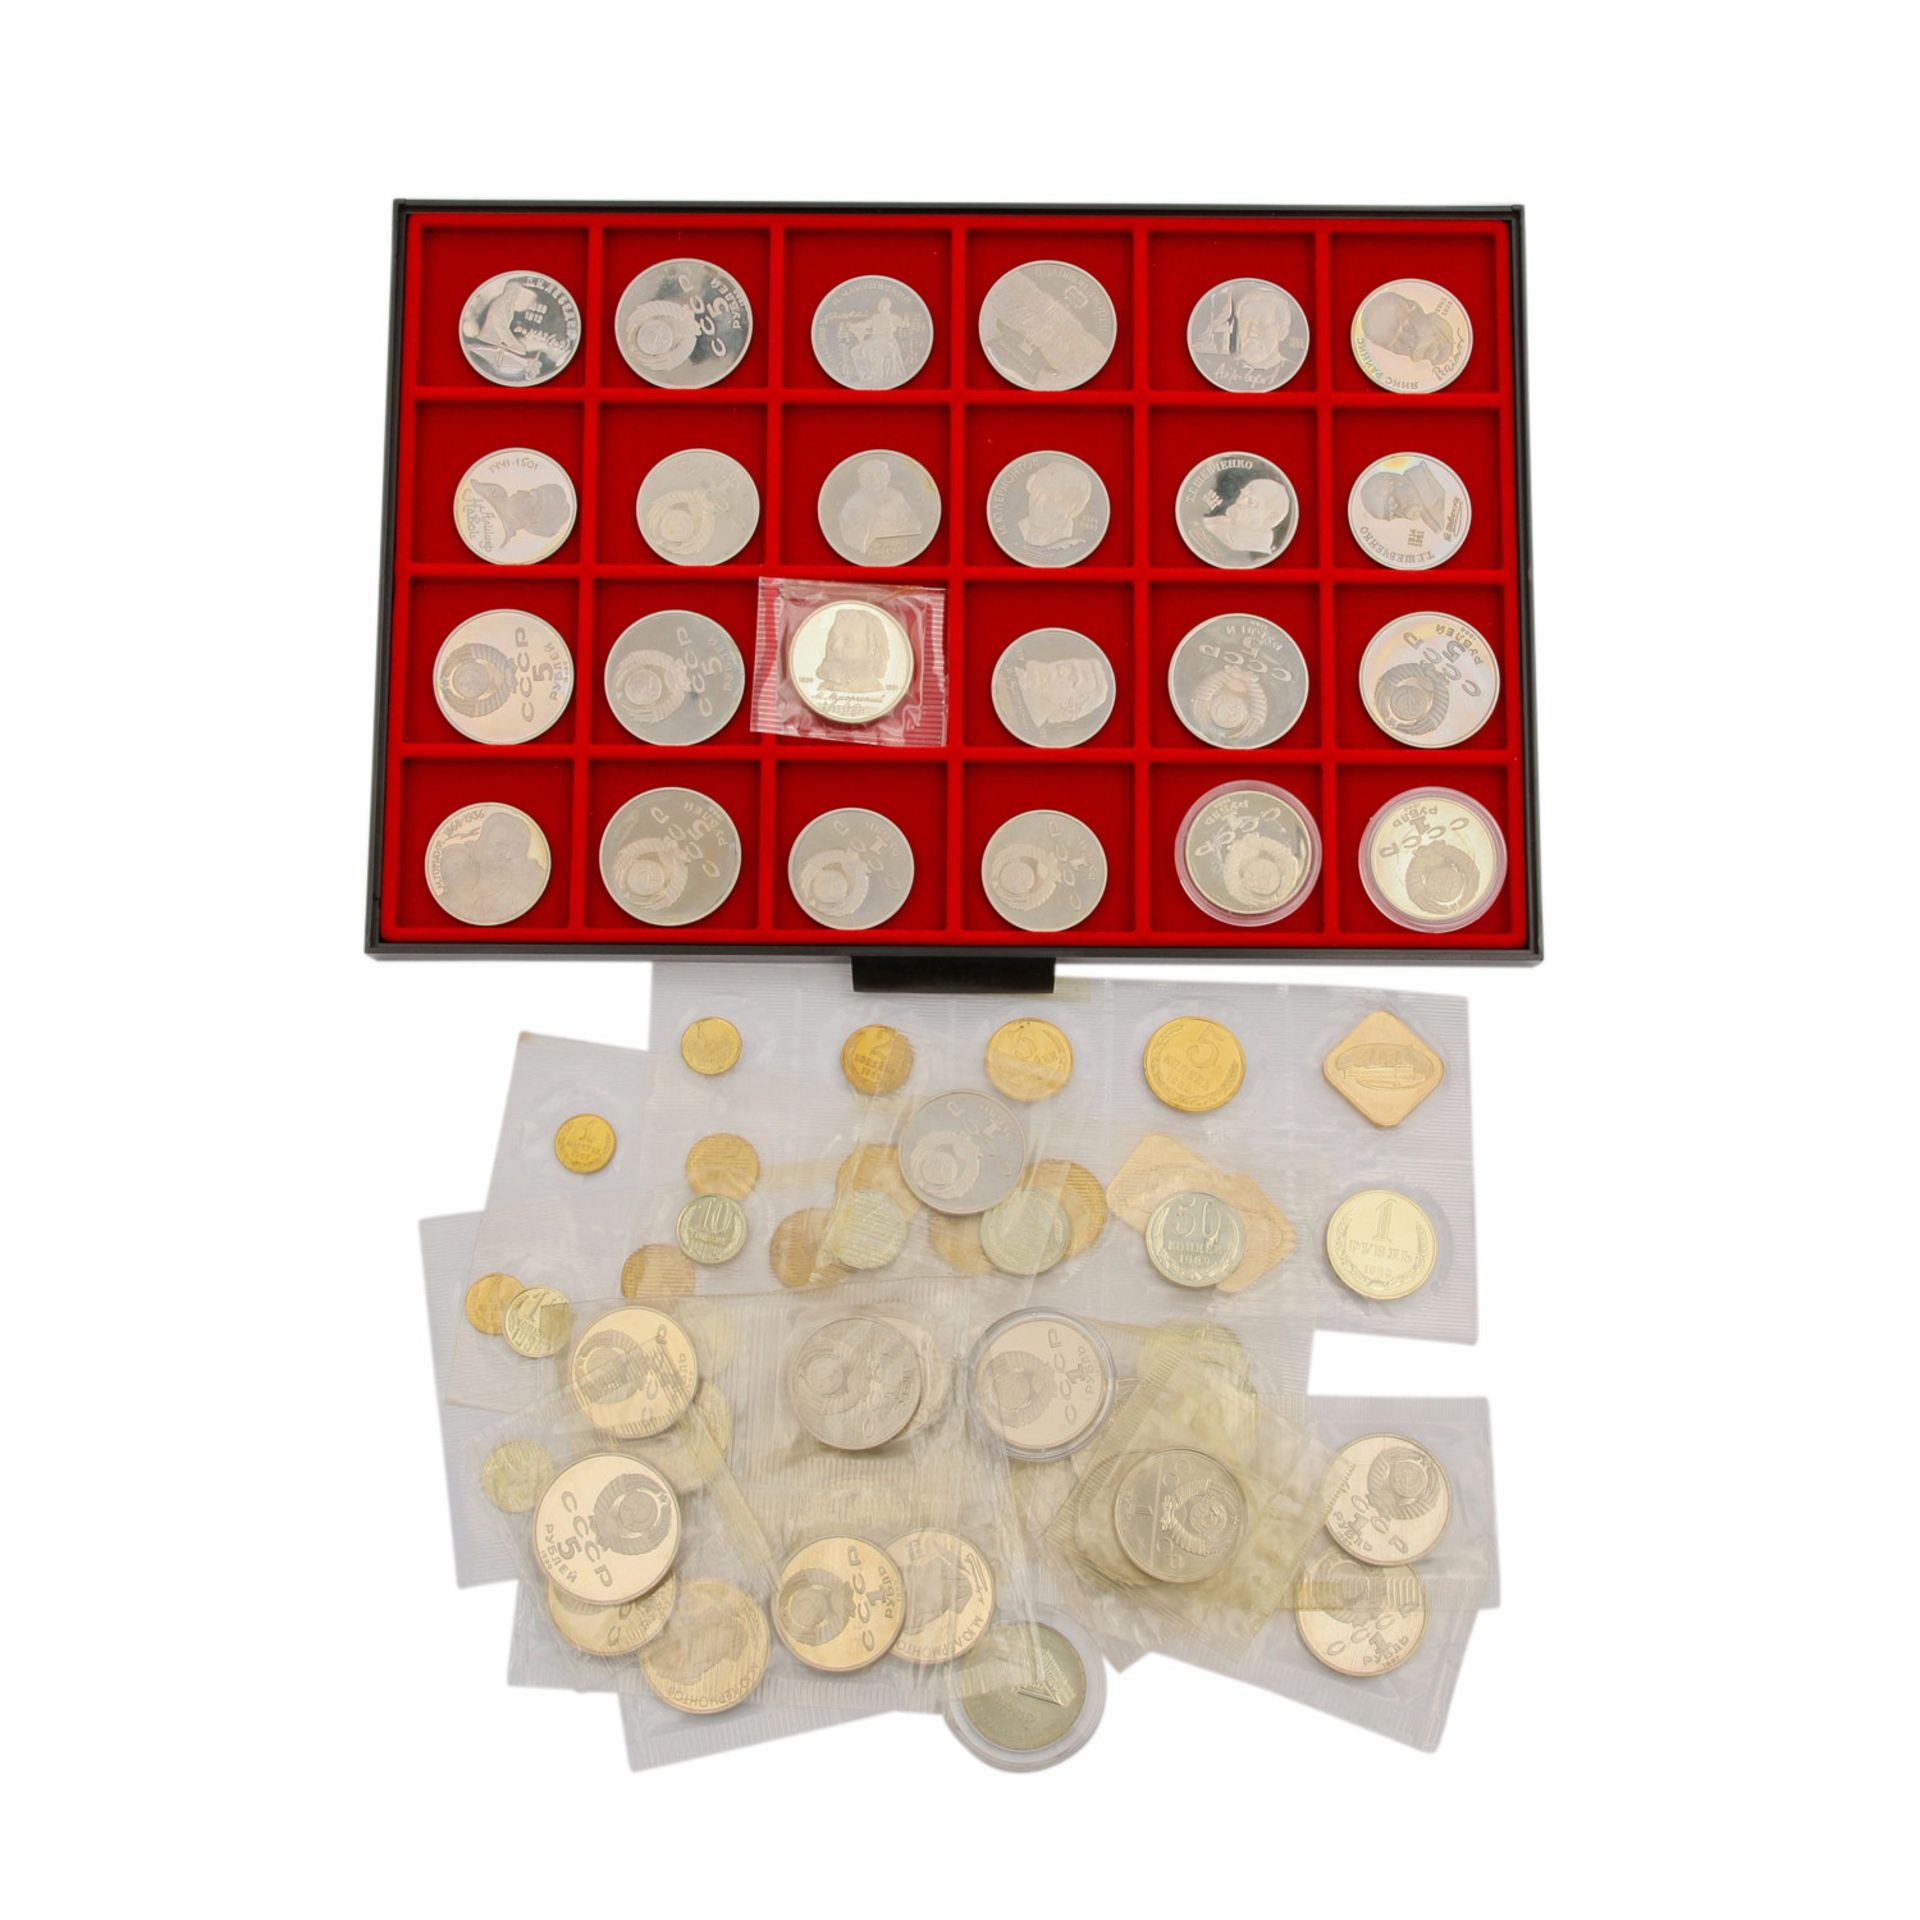 Russland - KABE Tableau mit 24 Münzen, darunter 5 und 1 Rubel CuNi,dazu 3 KMS 1988/89, lose 20 x 1